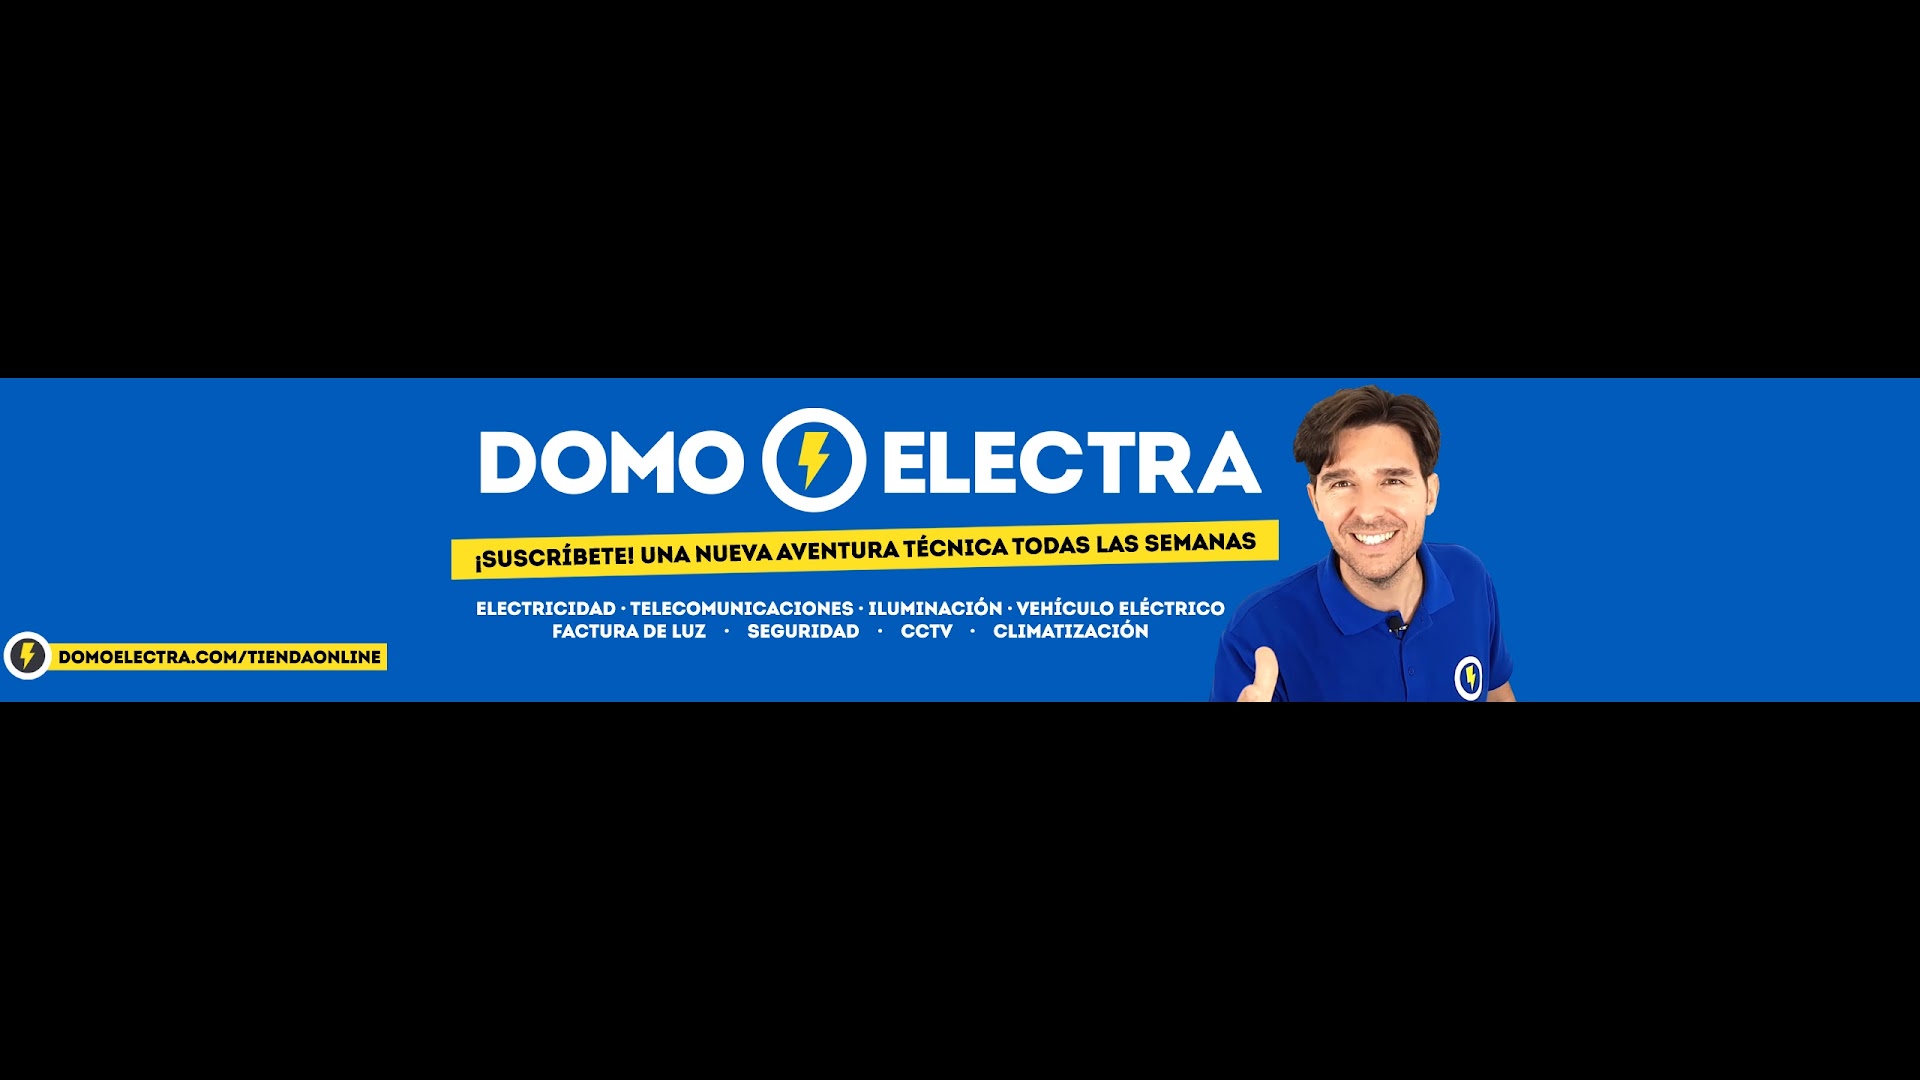 Domoelectra - La tienda online de electricidad y telecomunicaciones